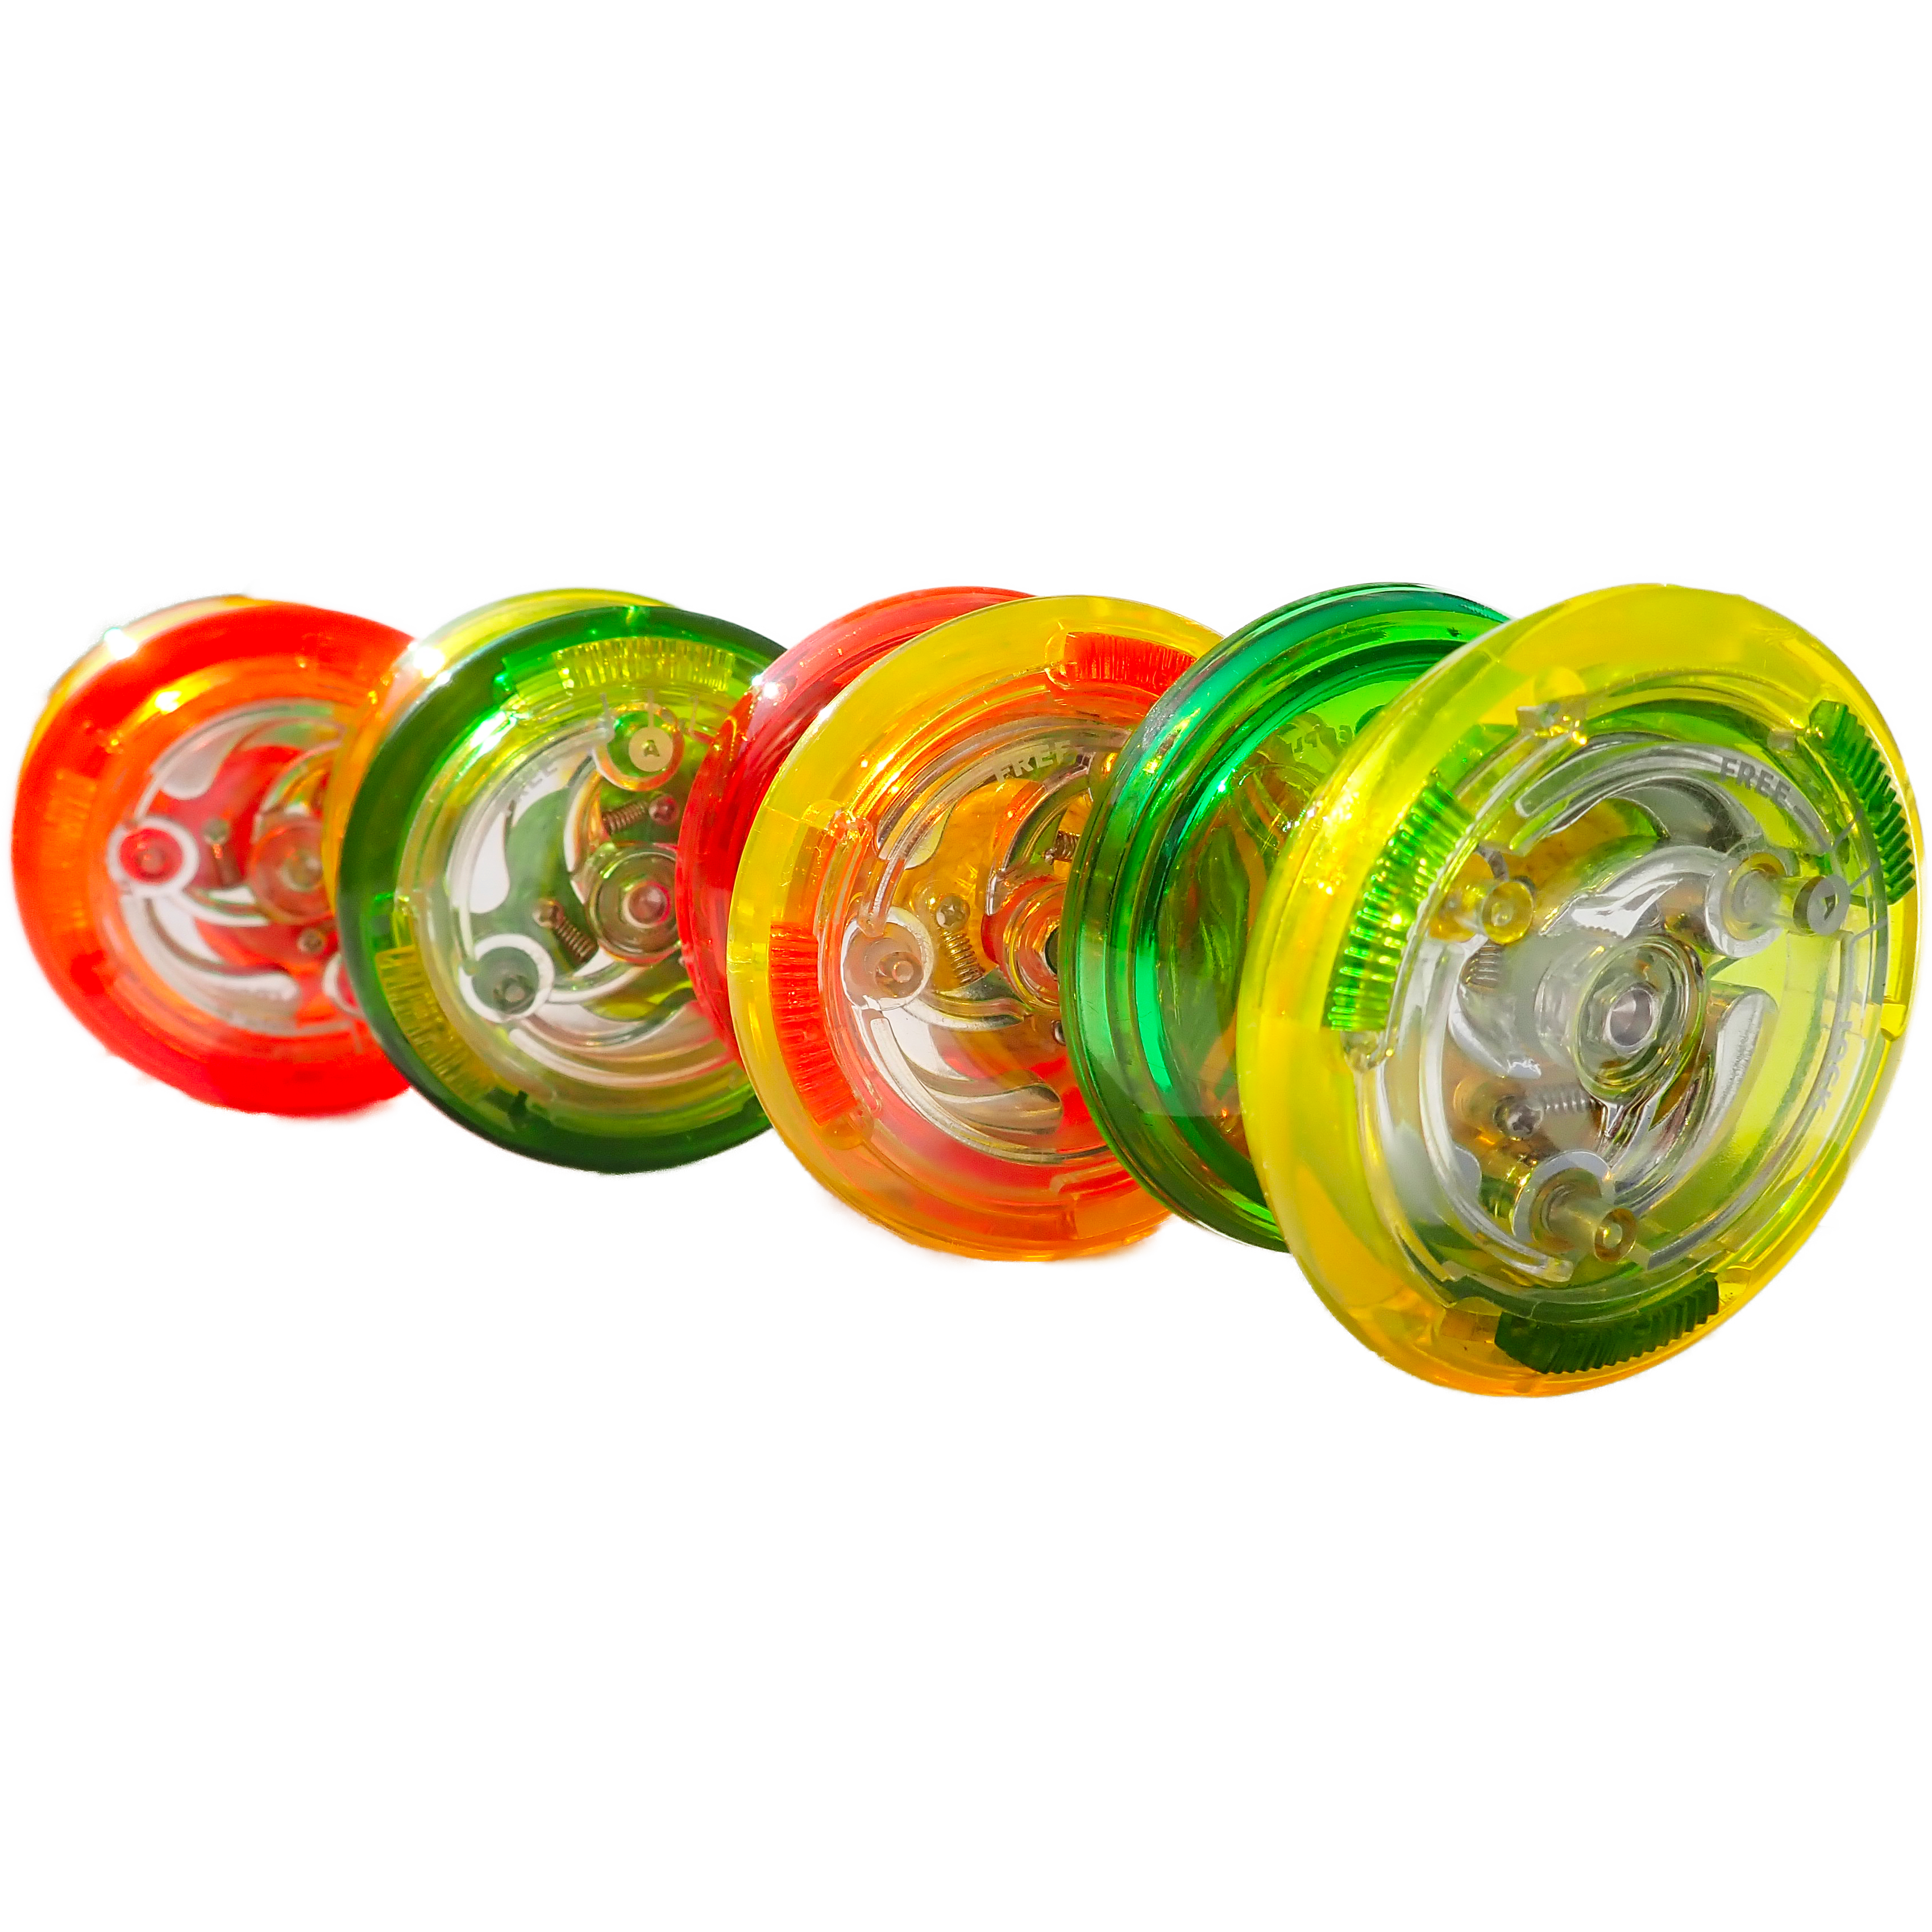 [YO]2 superbrain yo-yo COLORIS colours